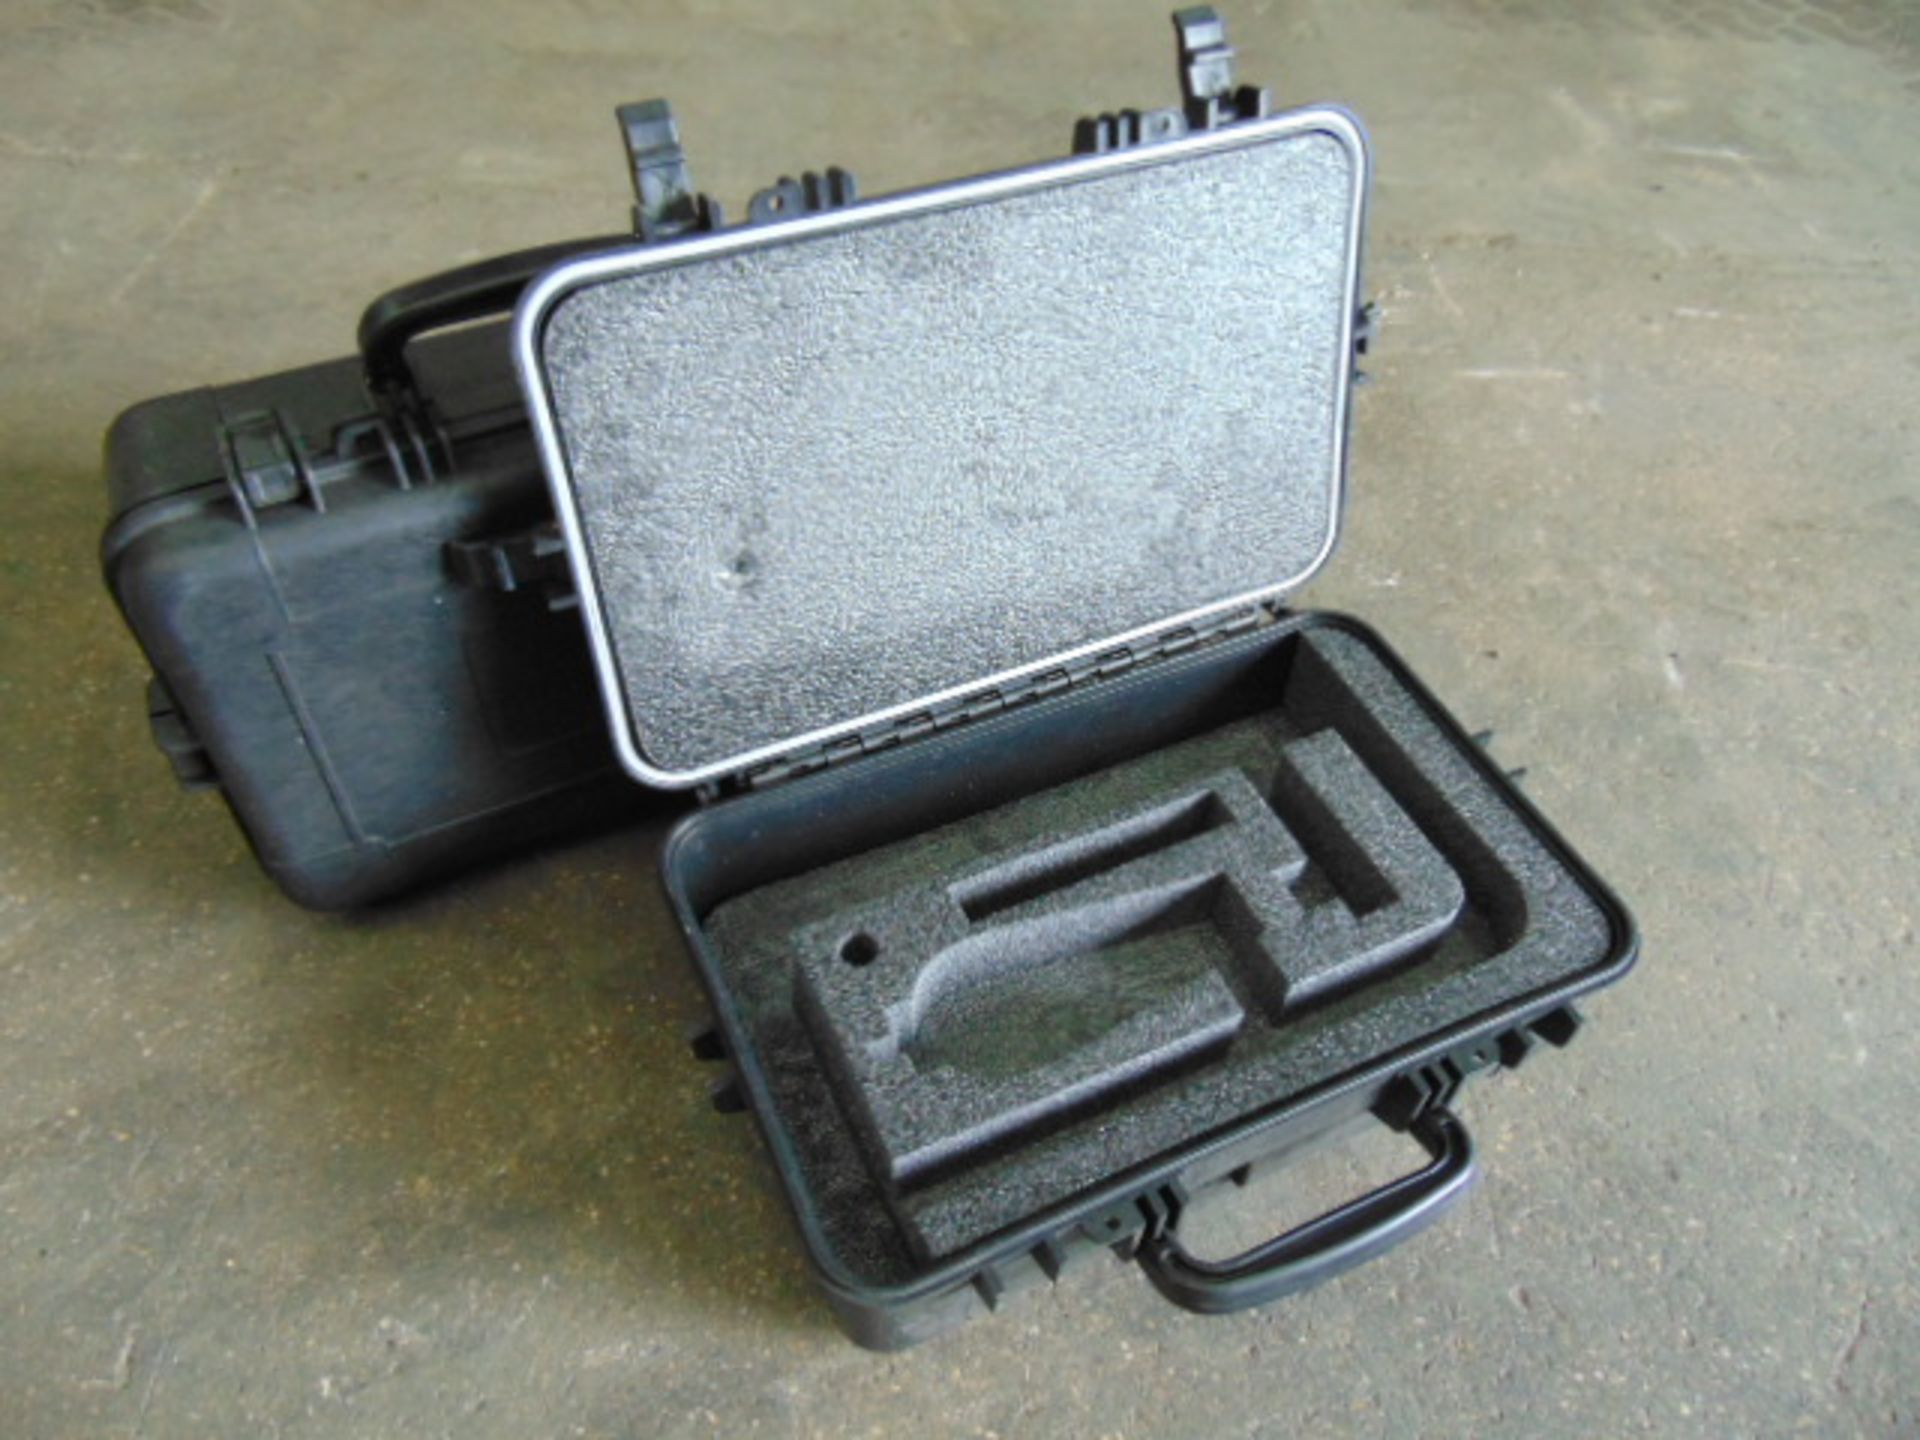 2 x Heavy-duty Waterproof Peli Style Hard Cases with Removeable Foam Inserts - Bild 4 aus 5